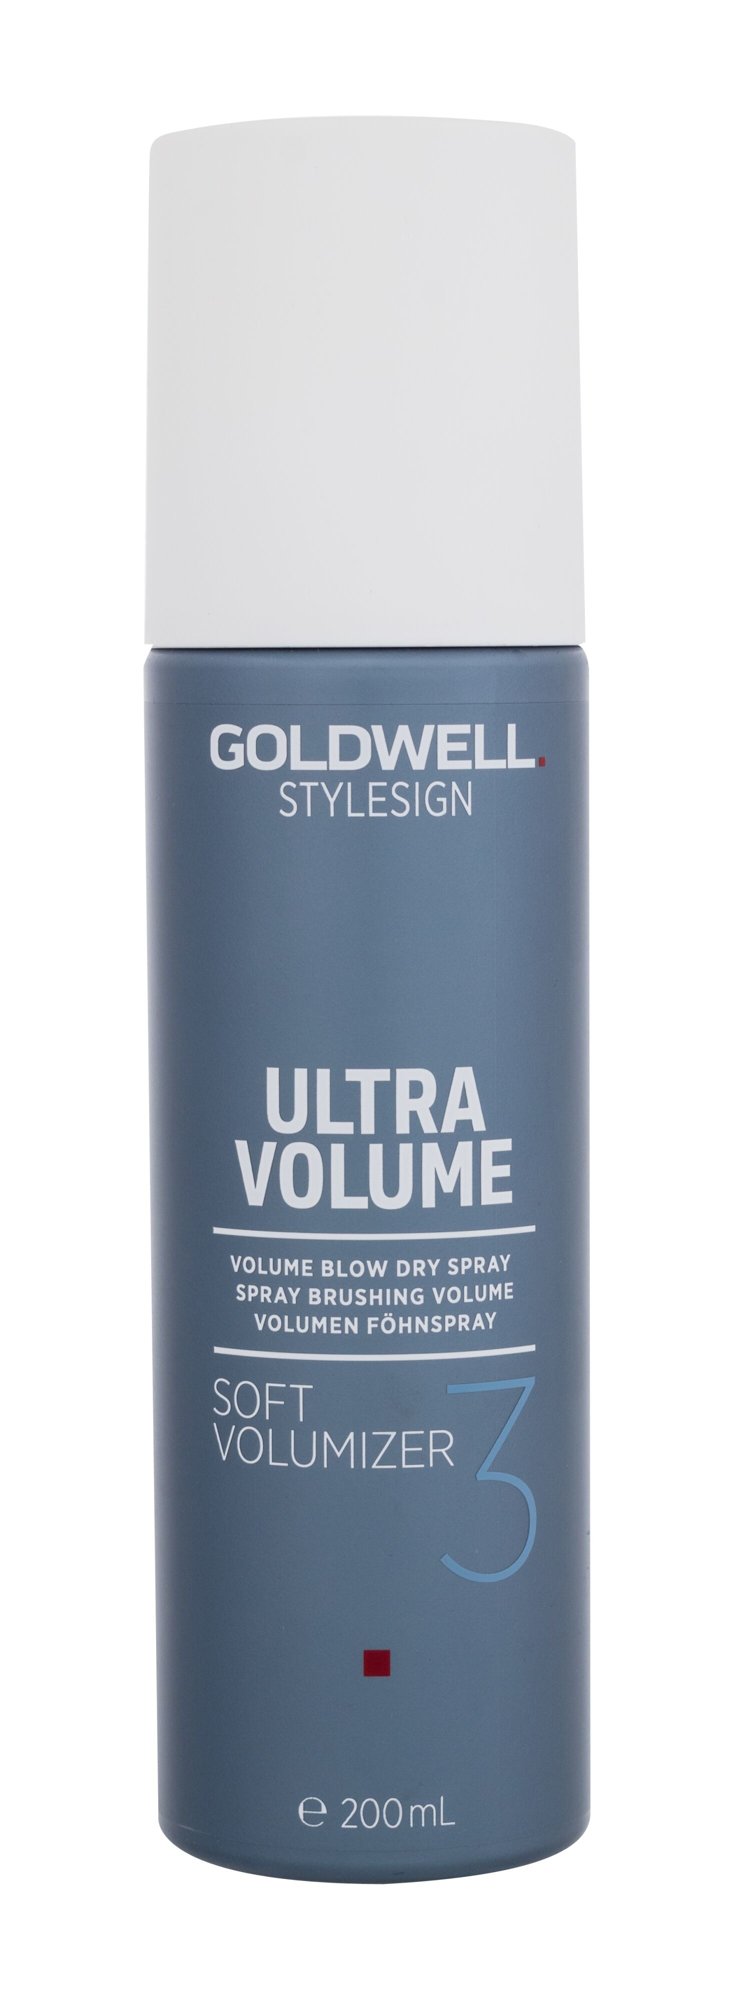 Goldwell Style Sign Ultra Volume Soft Volumizer 200ml priemonė plaukų apimčiai